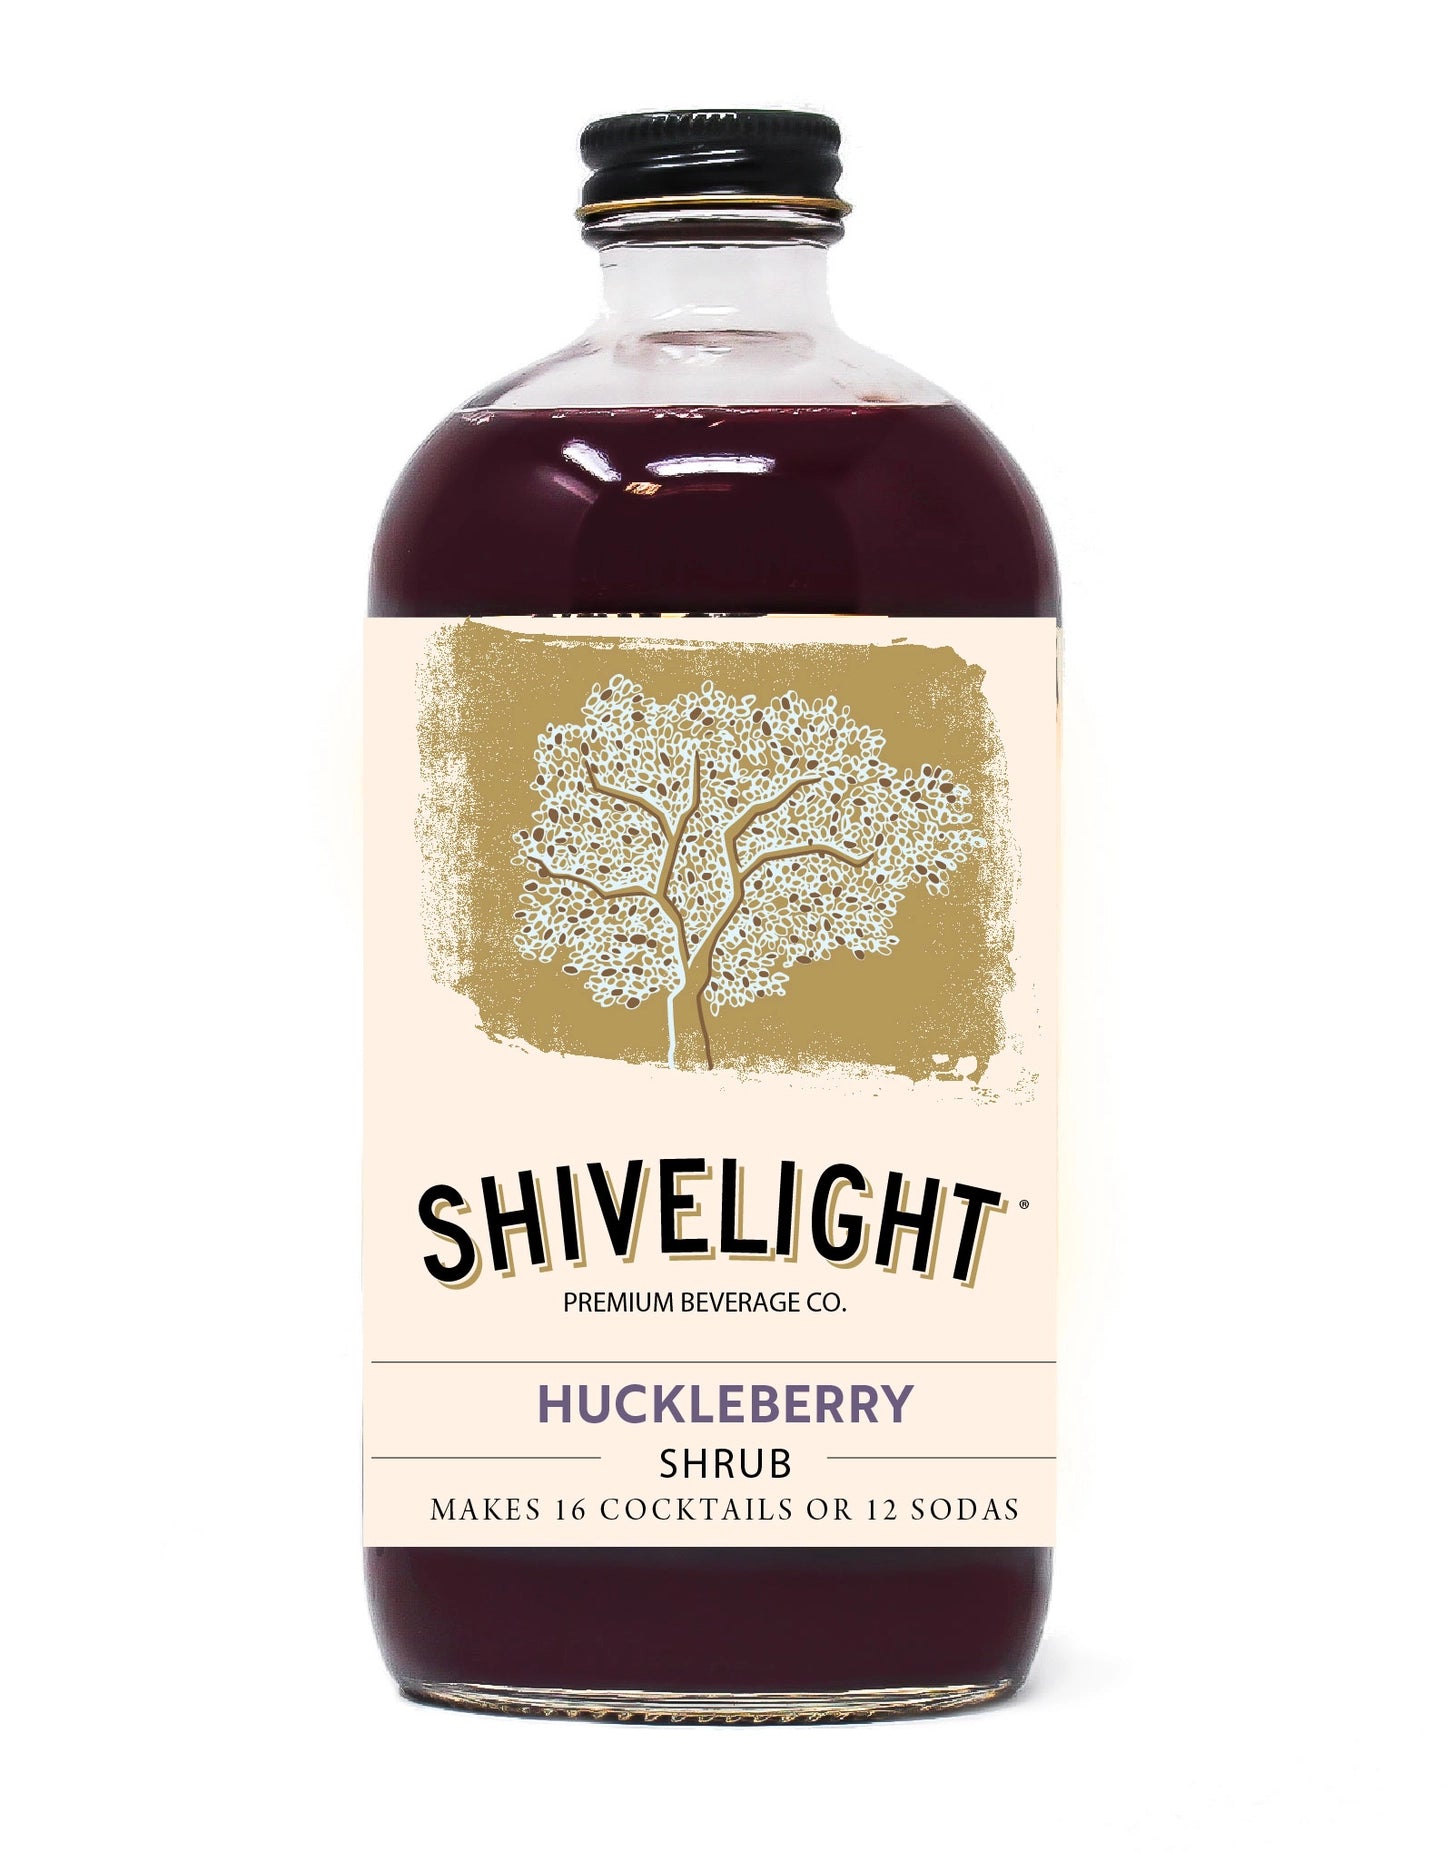 Huckleberry Shrub